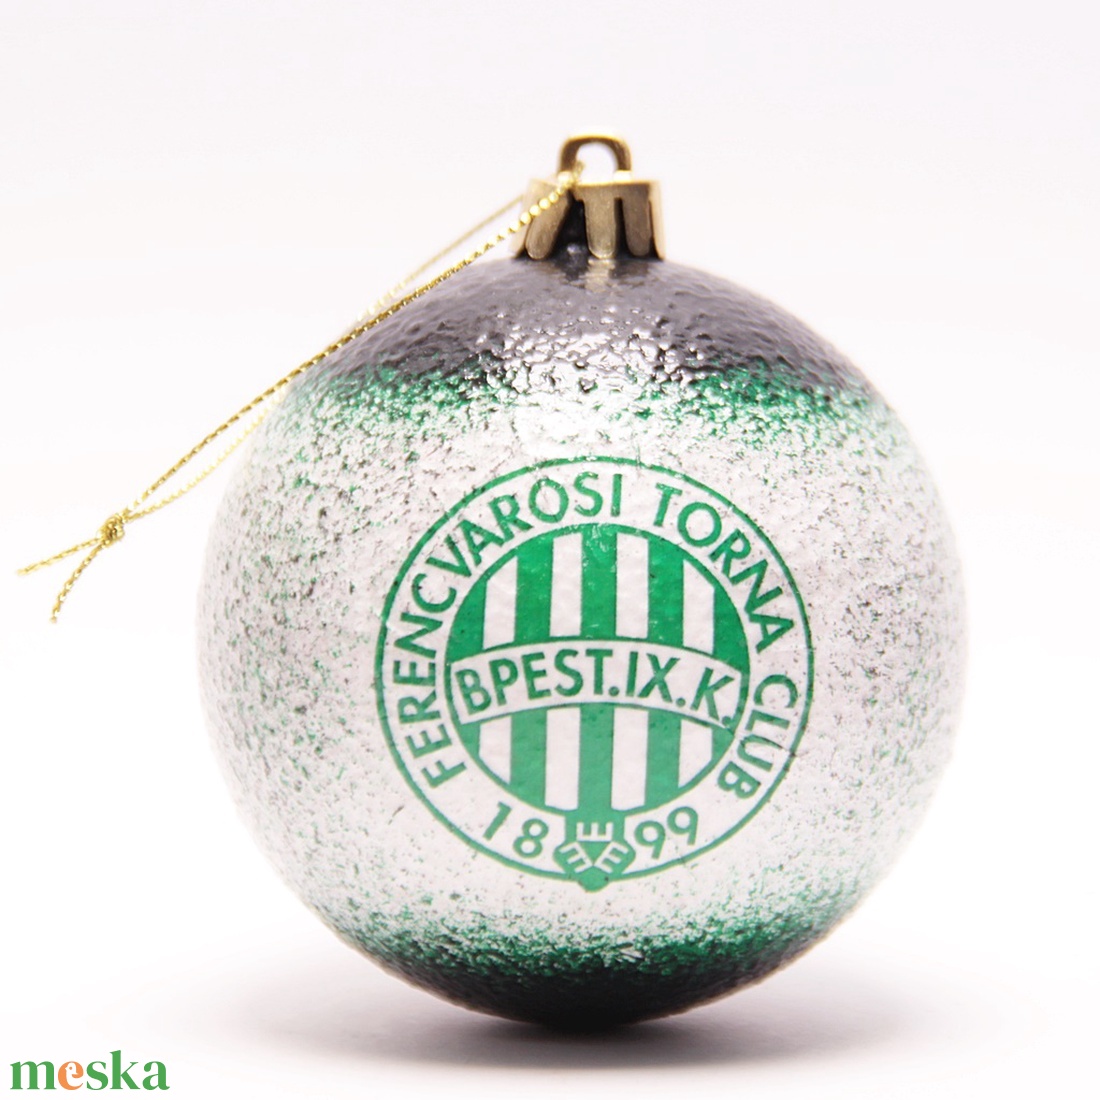 Karácsonyfa gömb foci témájú emblémával -FTC szurkolóknak  -  párodnak; szerelmednek  mikulásra és karácsonyra  - karácsony - karácsonyi lakásdekoráció - karácsonyfadíszek - Meska.hu